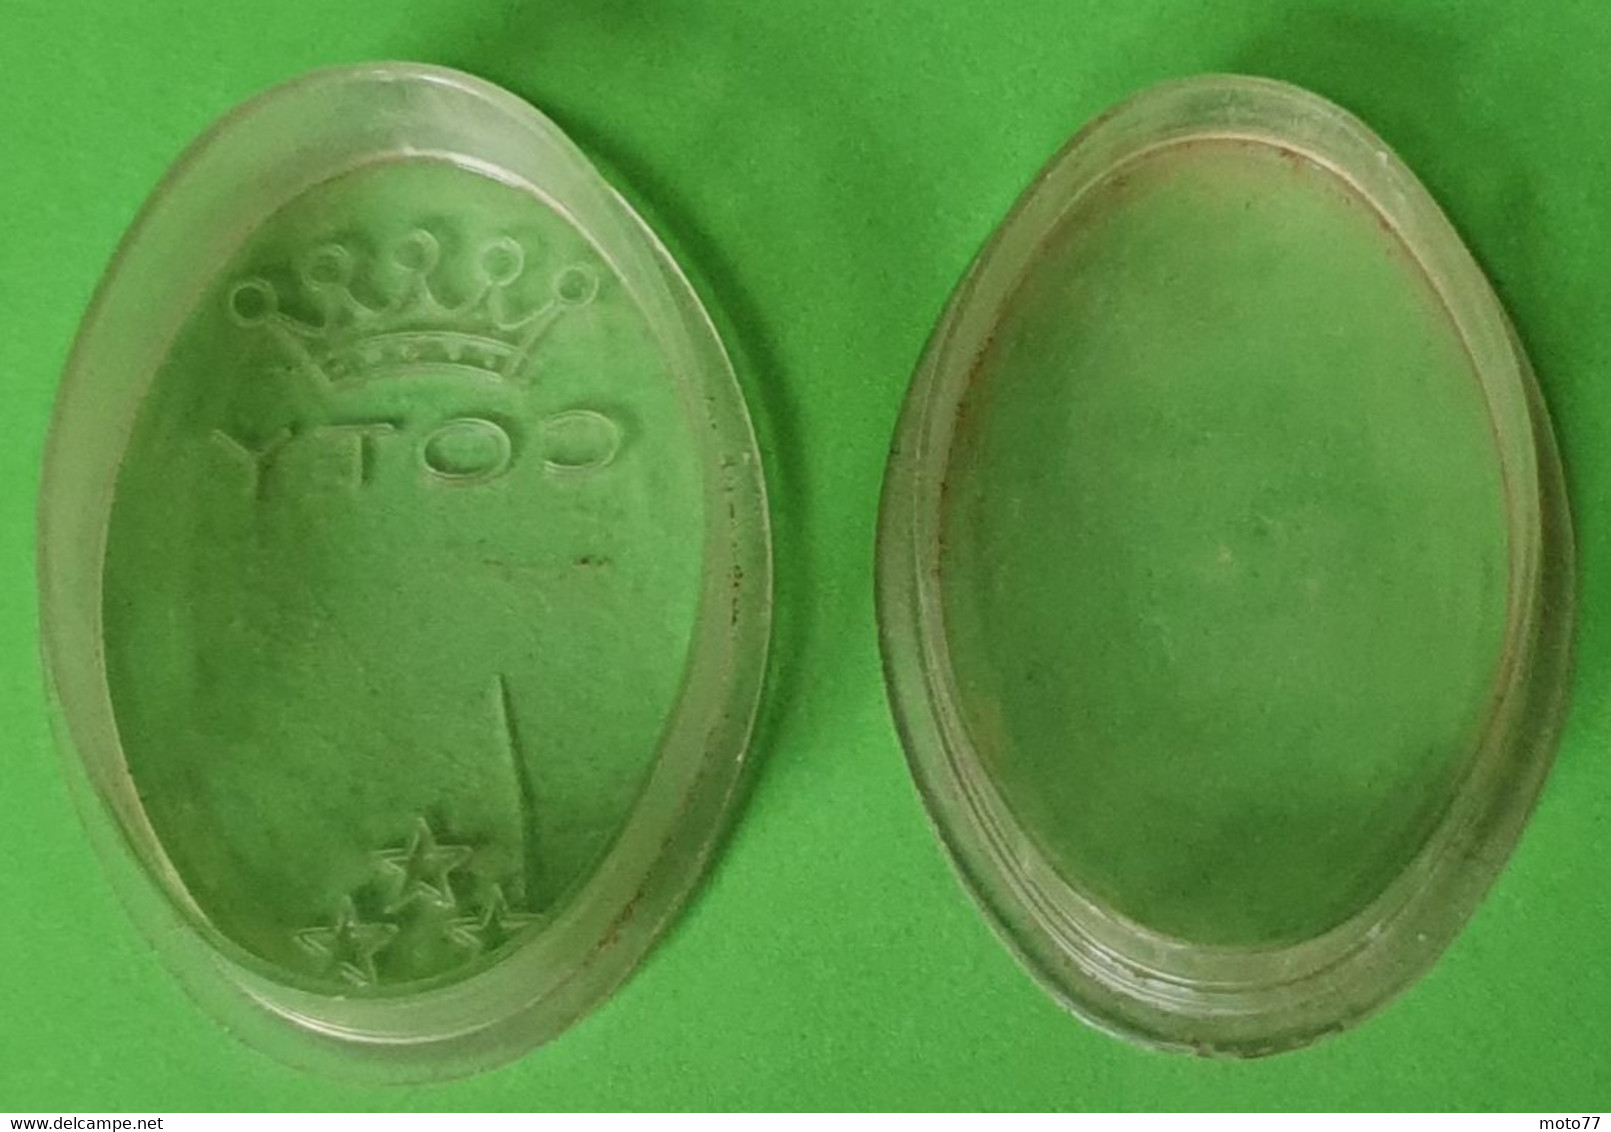 Ancienne Boite Plastique Ovale - Médicament COTY - 3 étoiles - Publicité Médicale Laboratoire - Vers 1960 - Boîtes